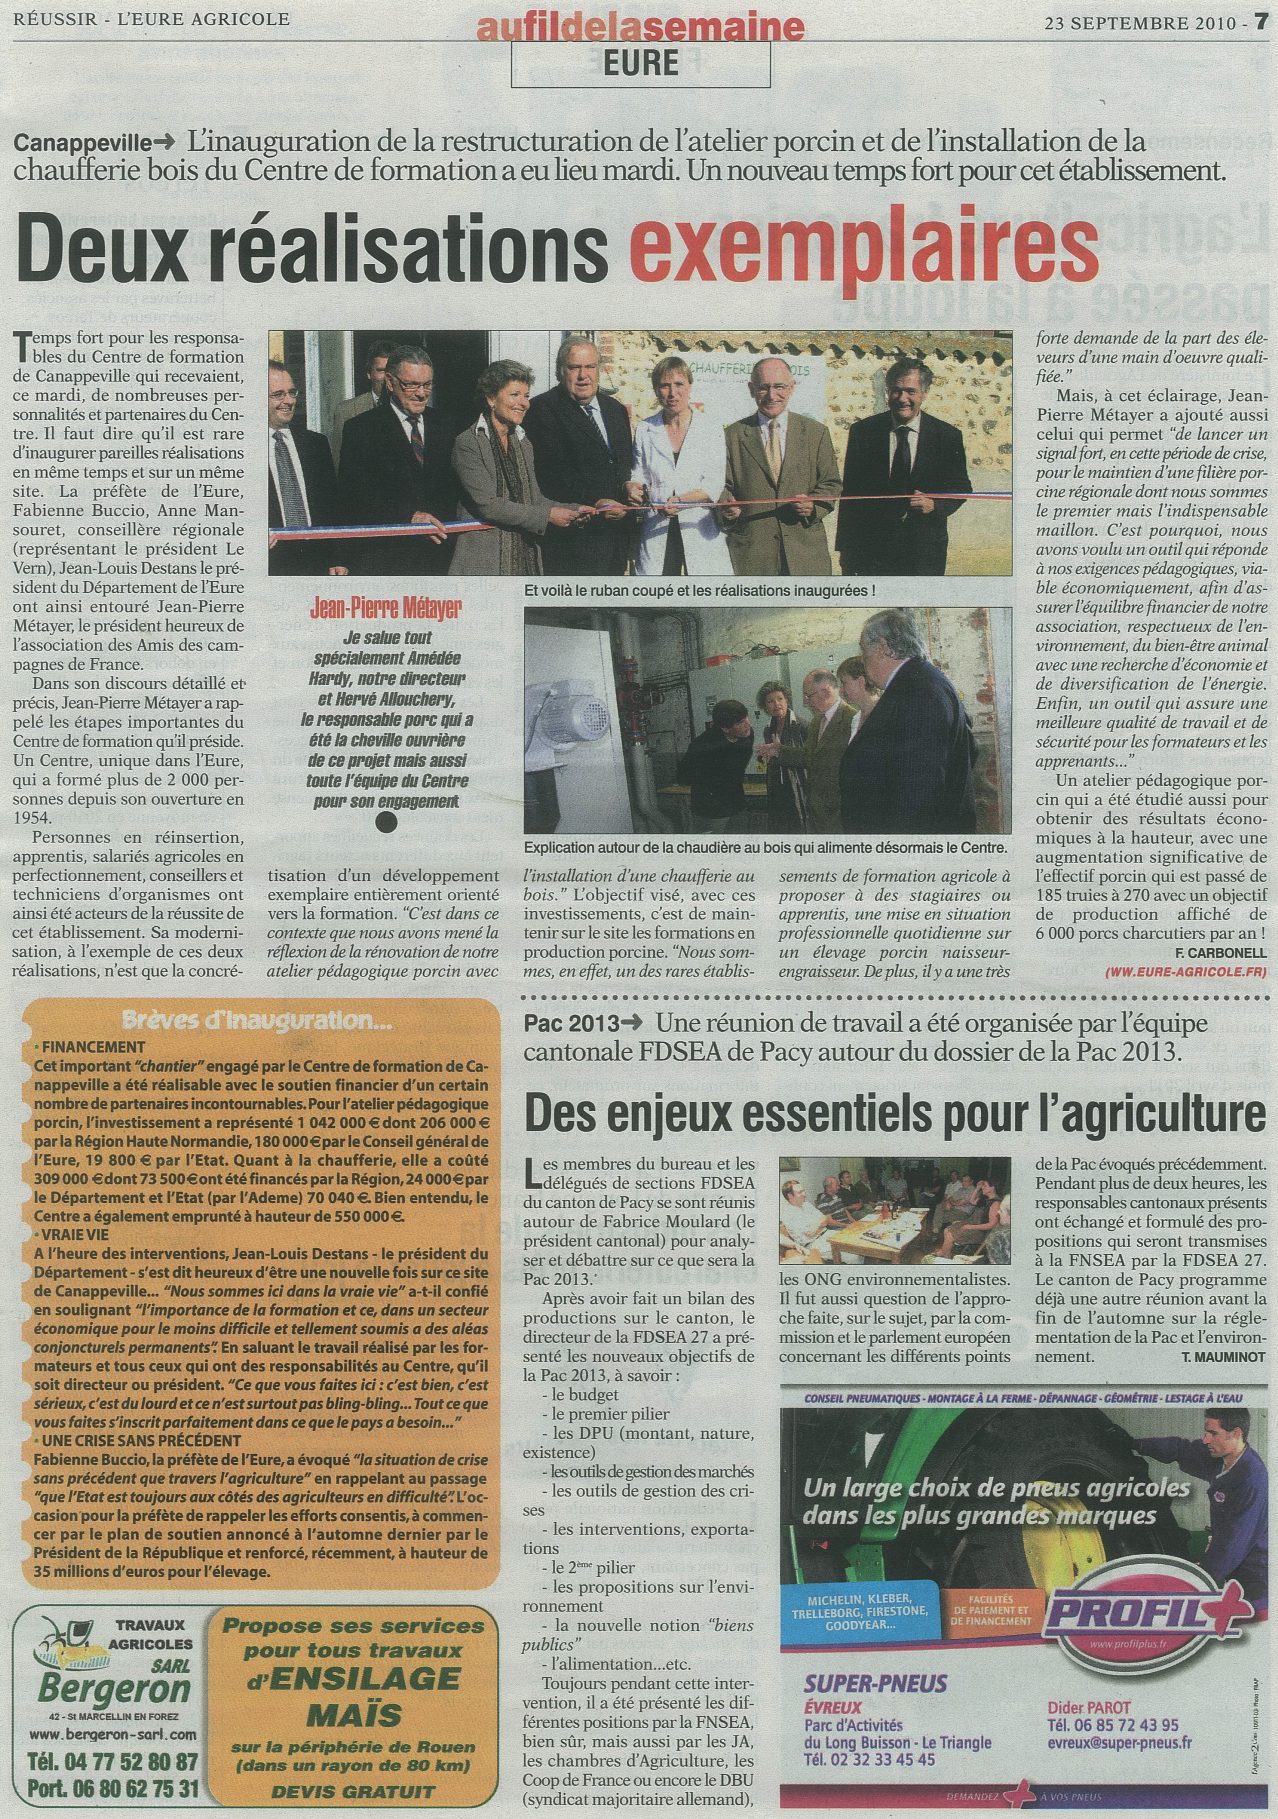 Eure Agricole (23 septembre 2010) (Page 2)